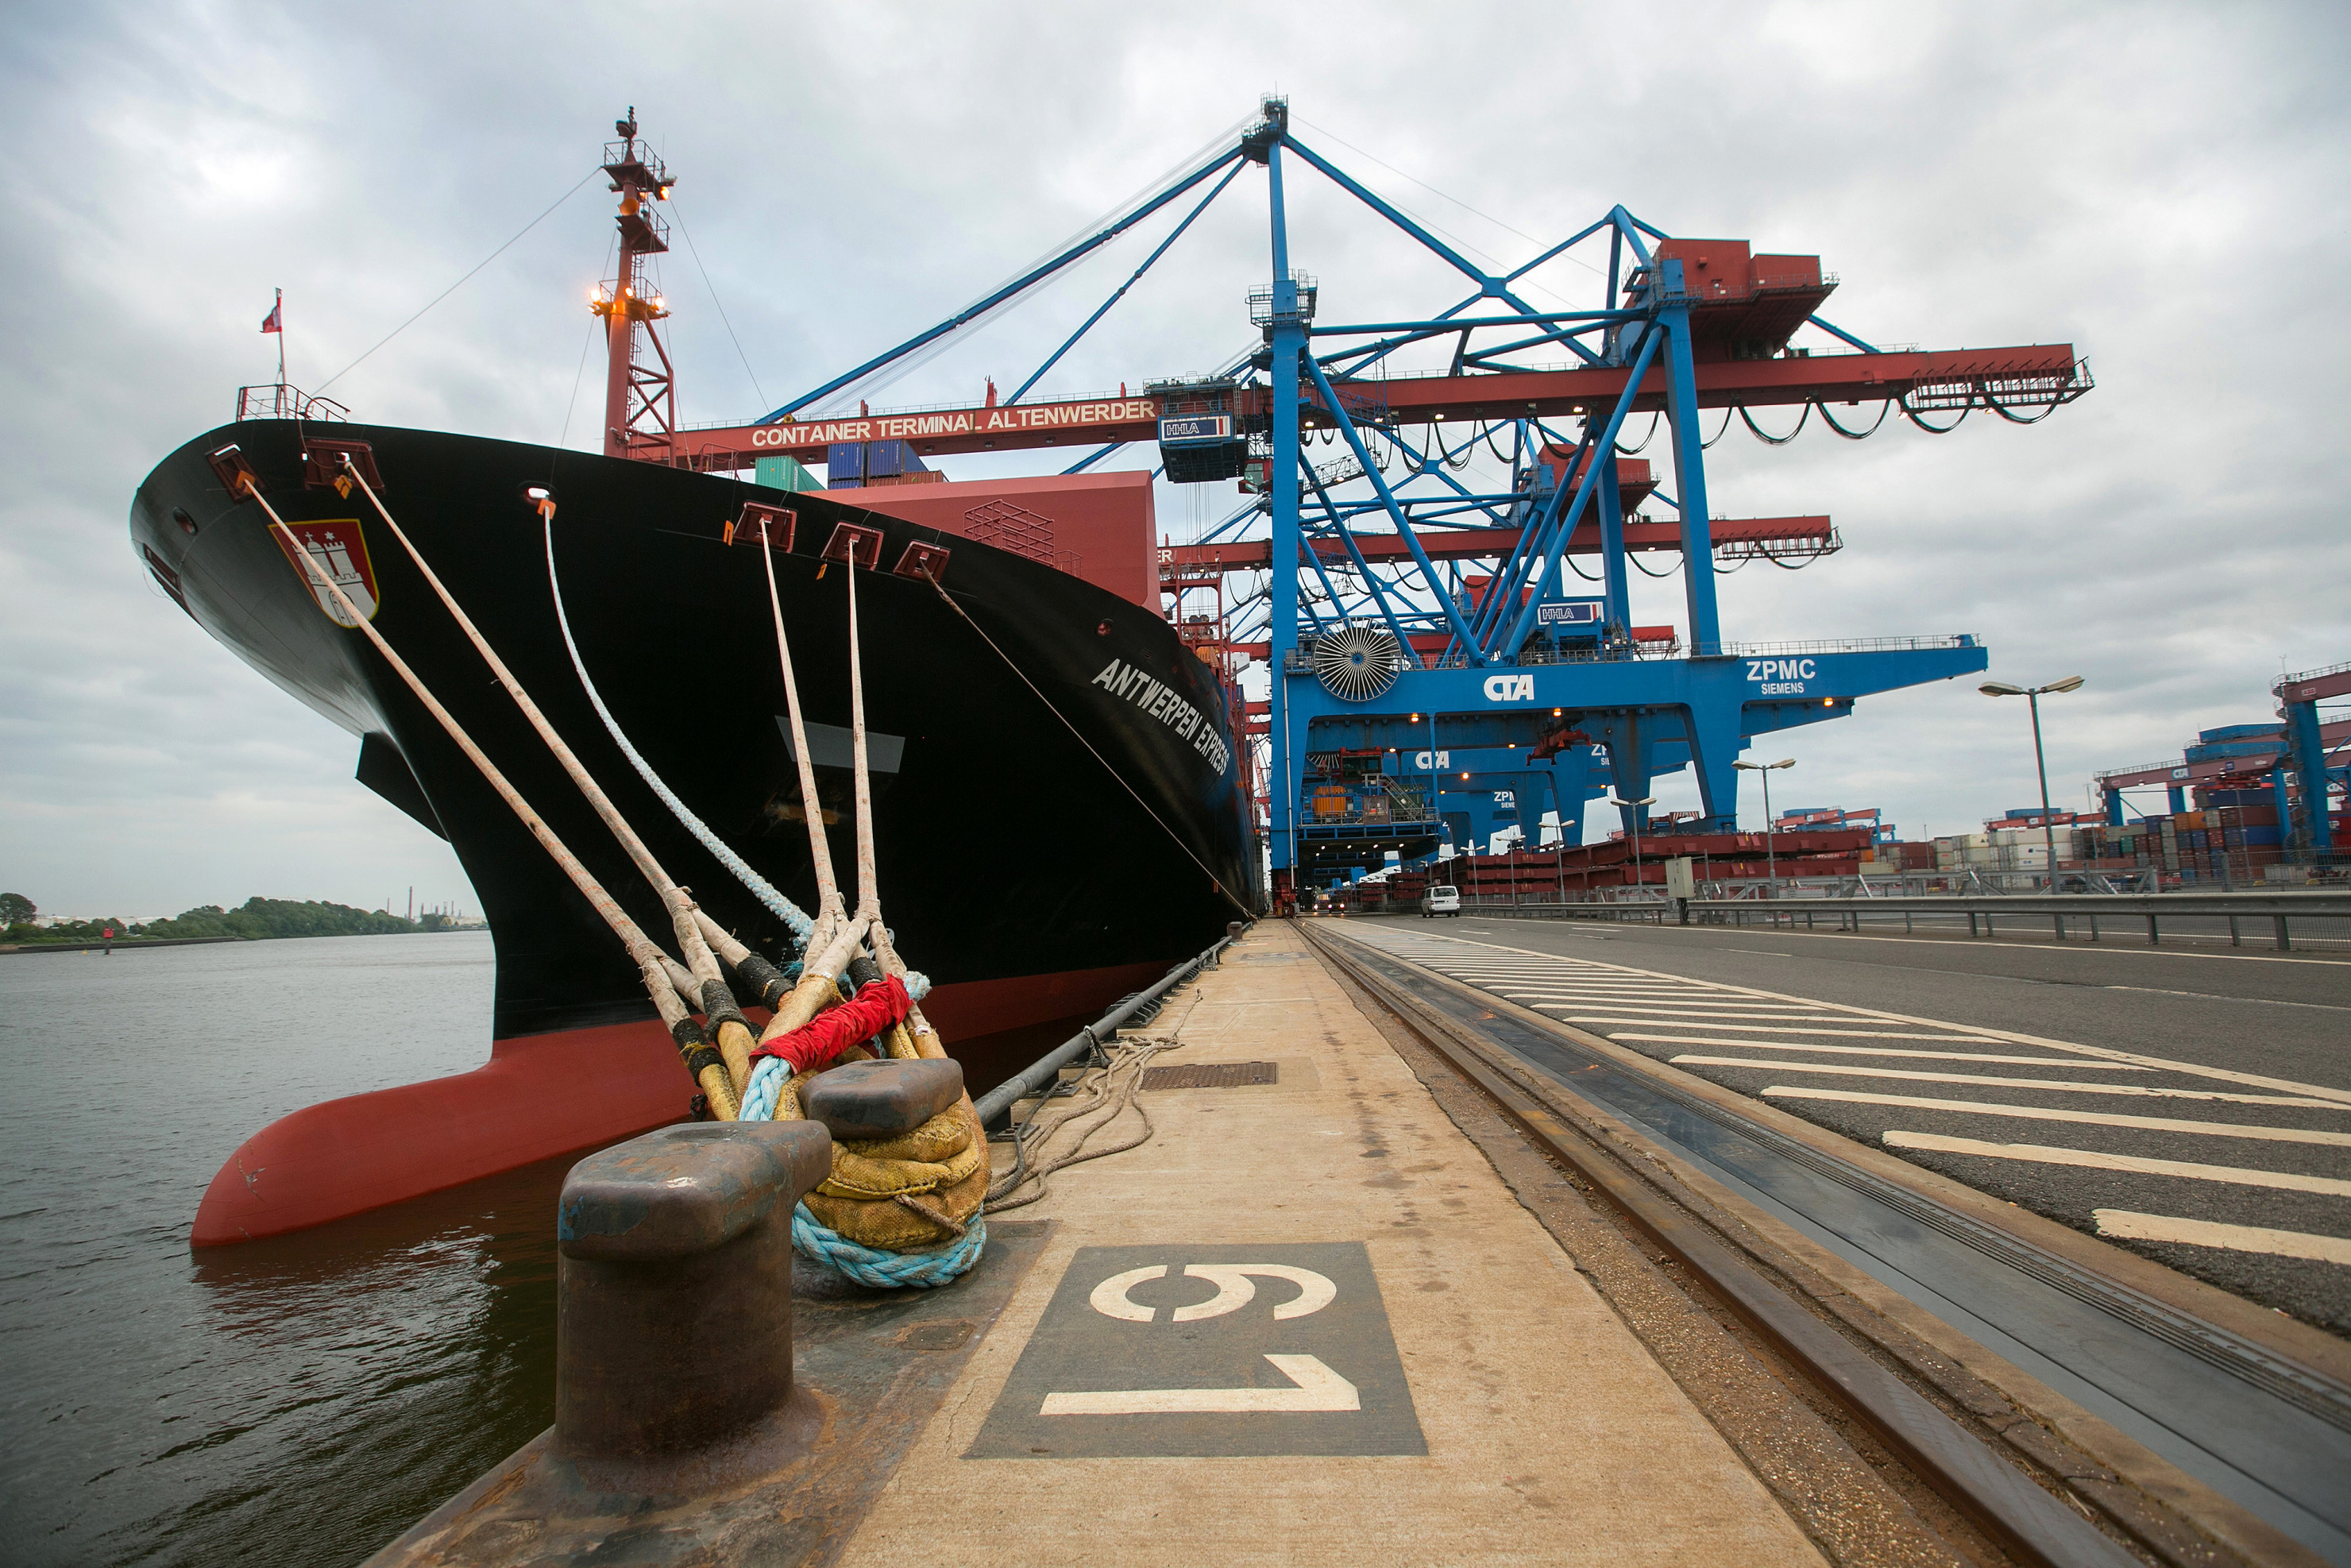 A panamax container ship at Hamburg port.